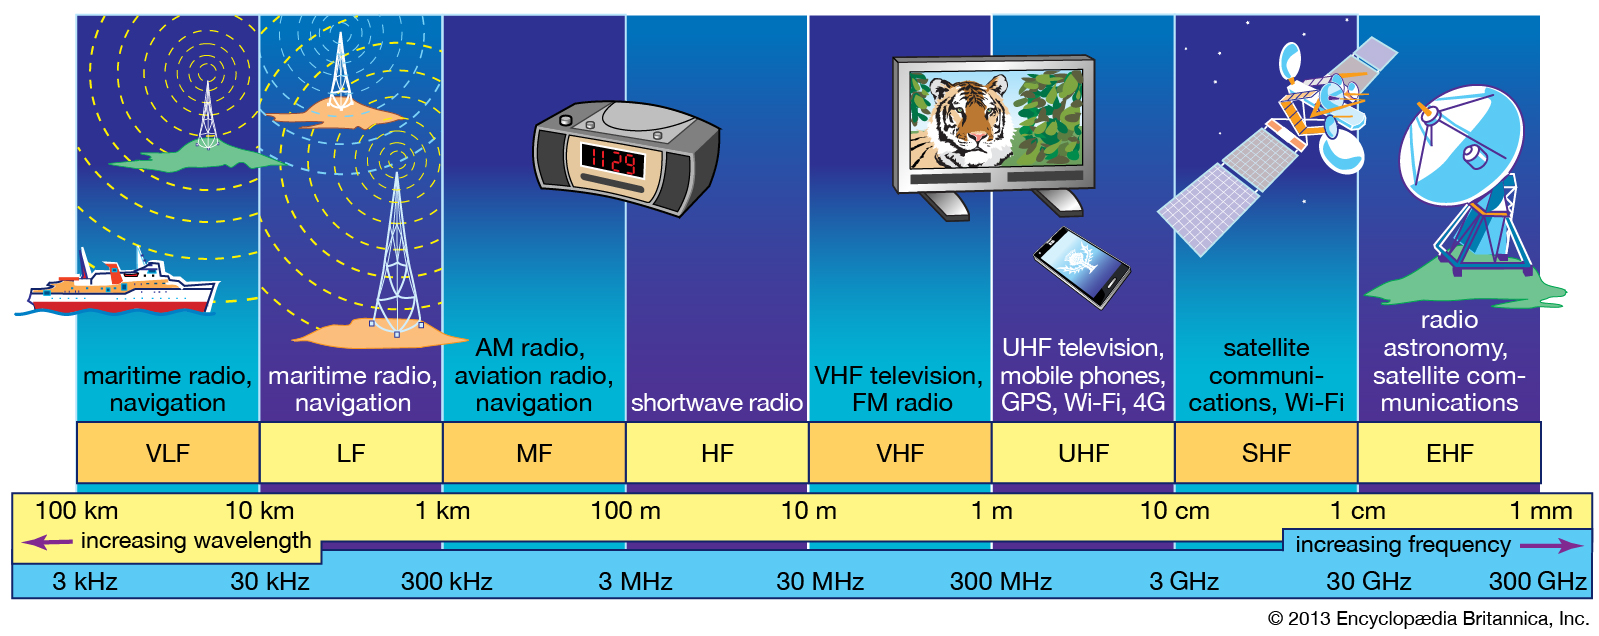 Св частоты. Полоса частот радиосвязи. Частота радиоволн. Диапазон частот радиоволн. Частотный диапазон радиоволн.